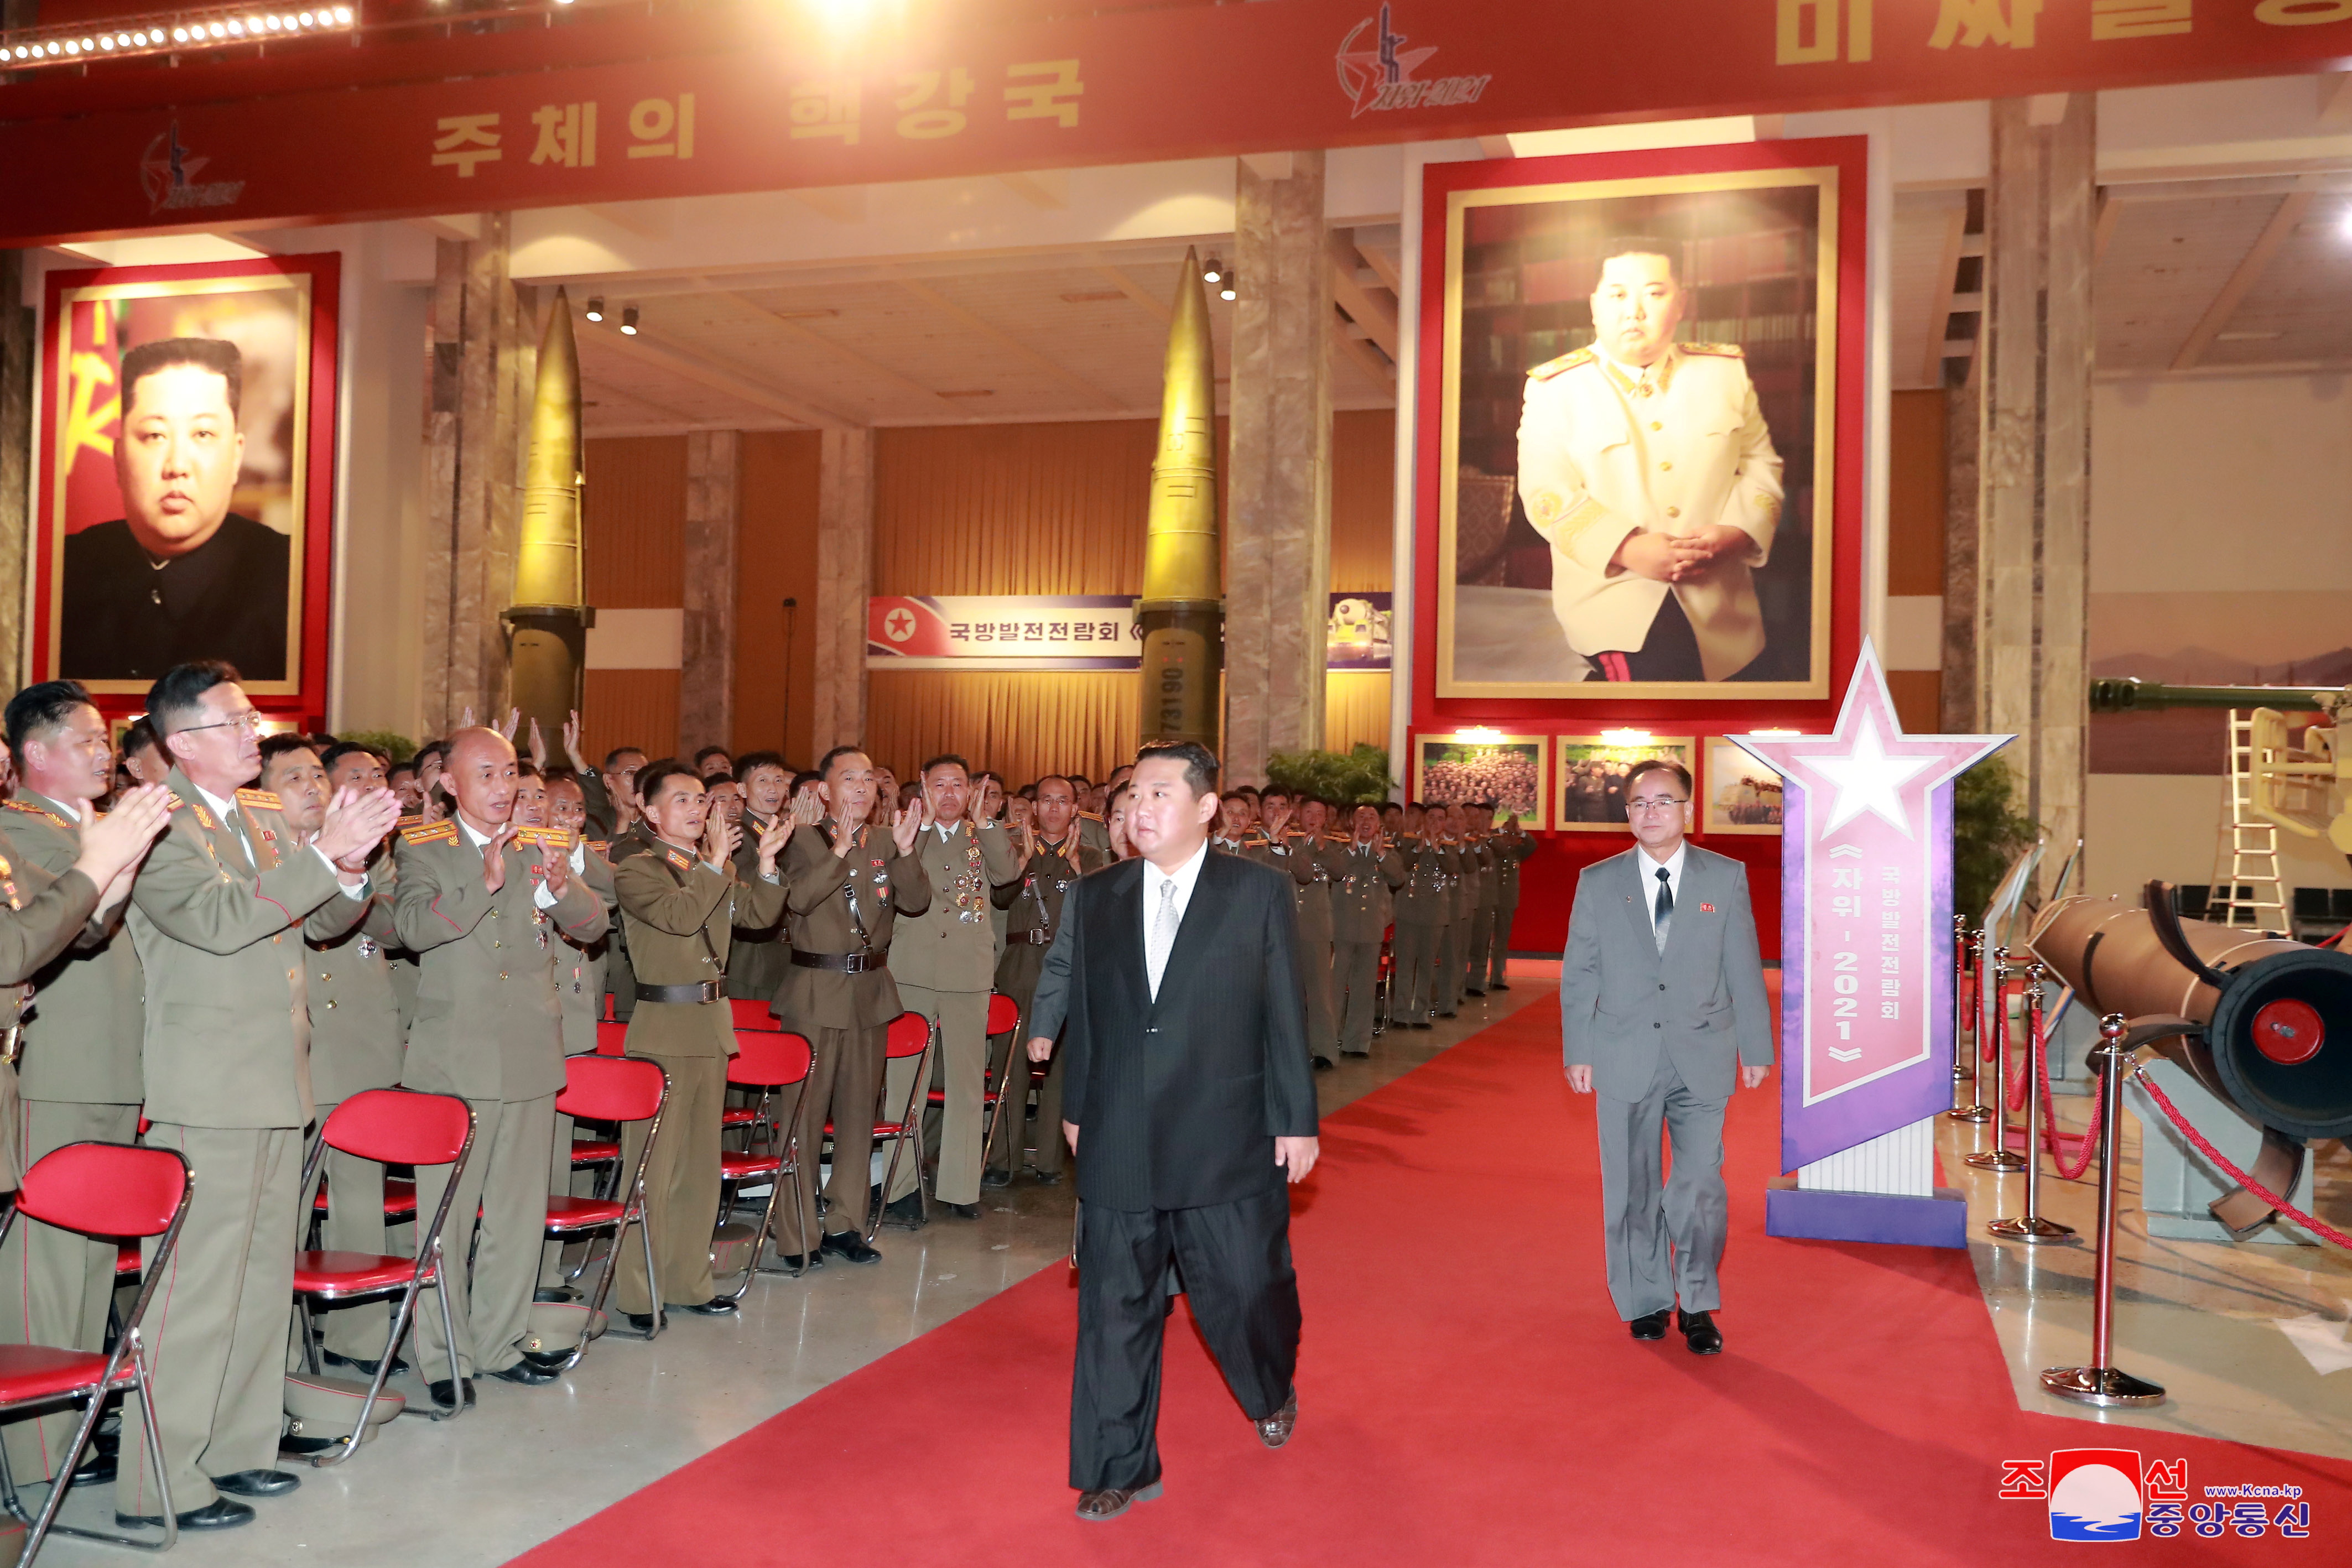 El líder norcoreano Kim Jong Un, en la Exposición de Desarrollo de la Defensa, en Pyongyang, Corea del Norte, en esta foto sin fecha publicada el 12 de octubre de 2021 por la Agencia Central de Noticias de Corea del Norte (KCNA).